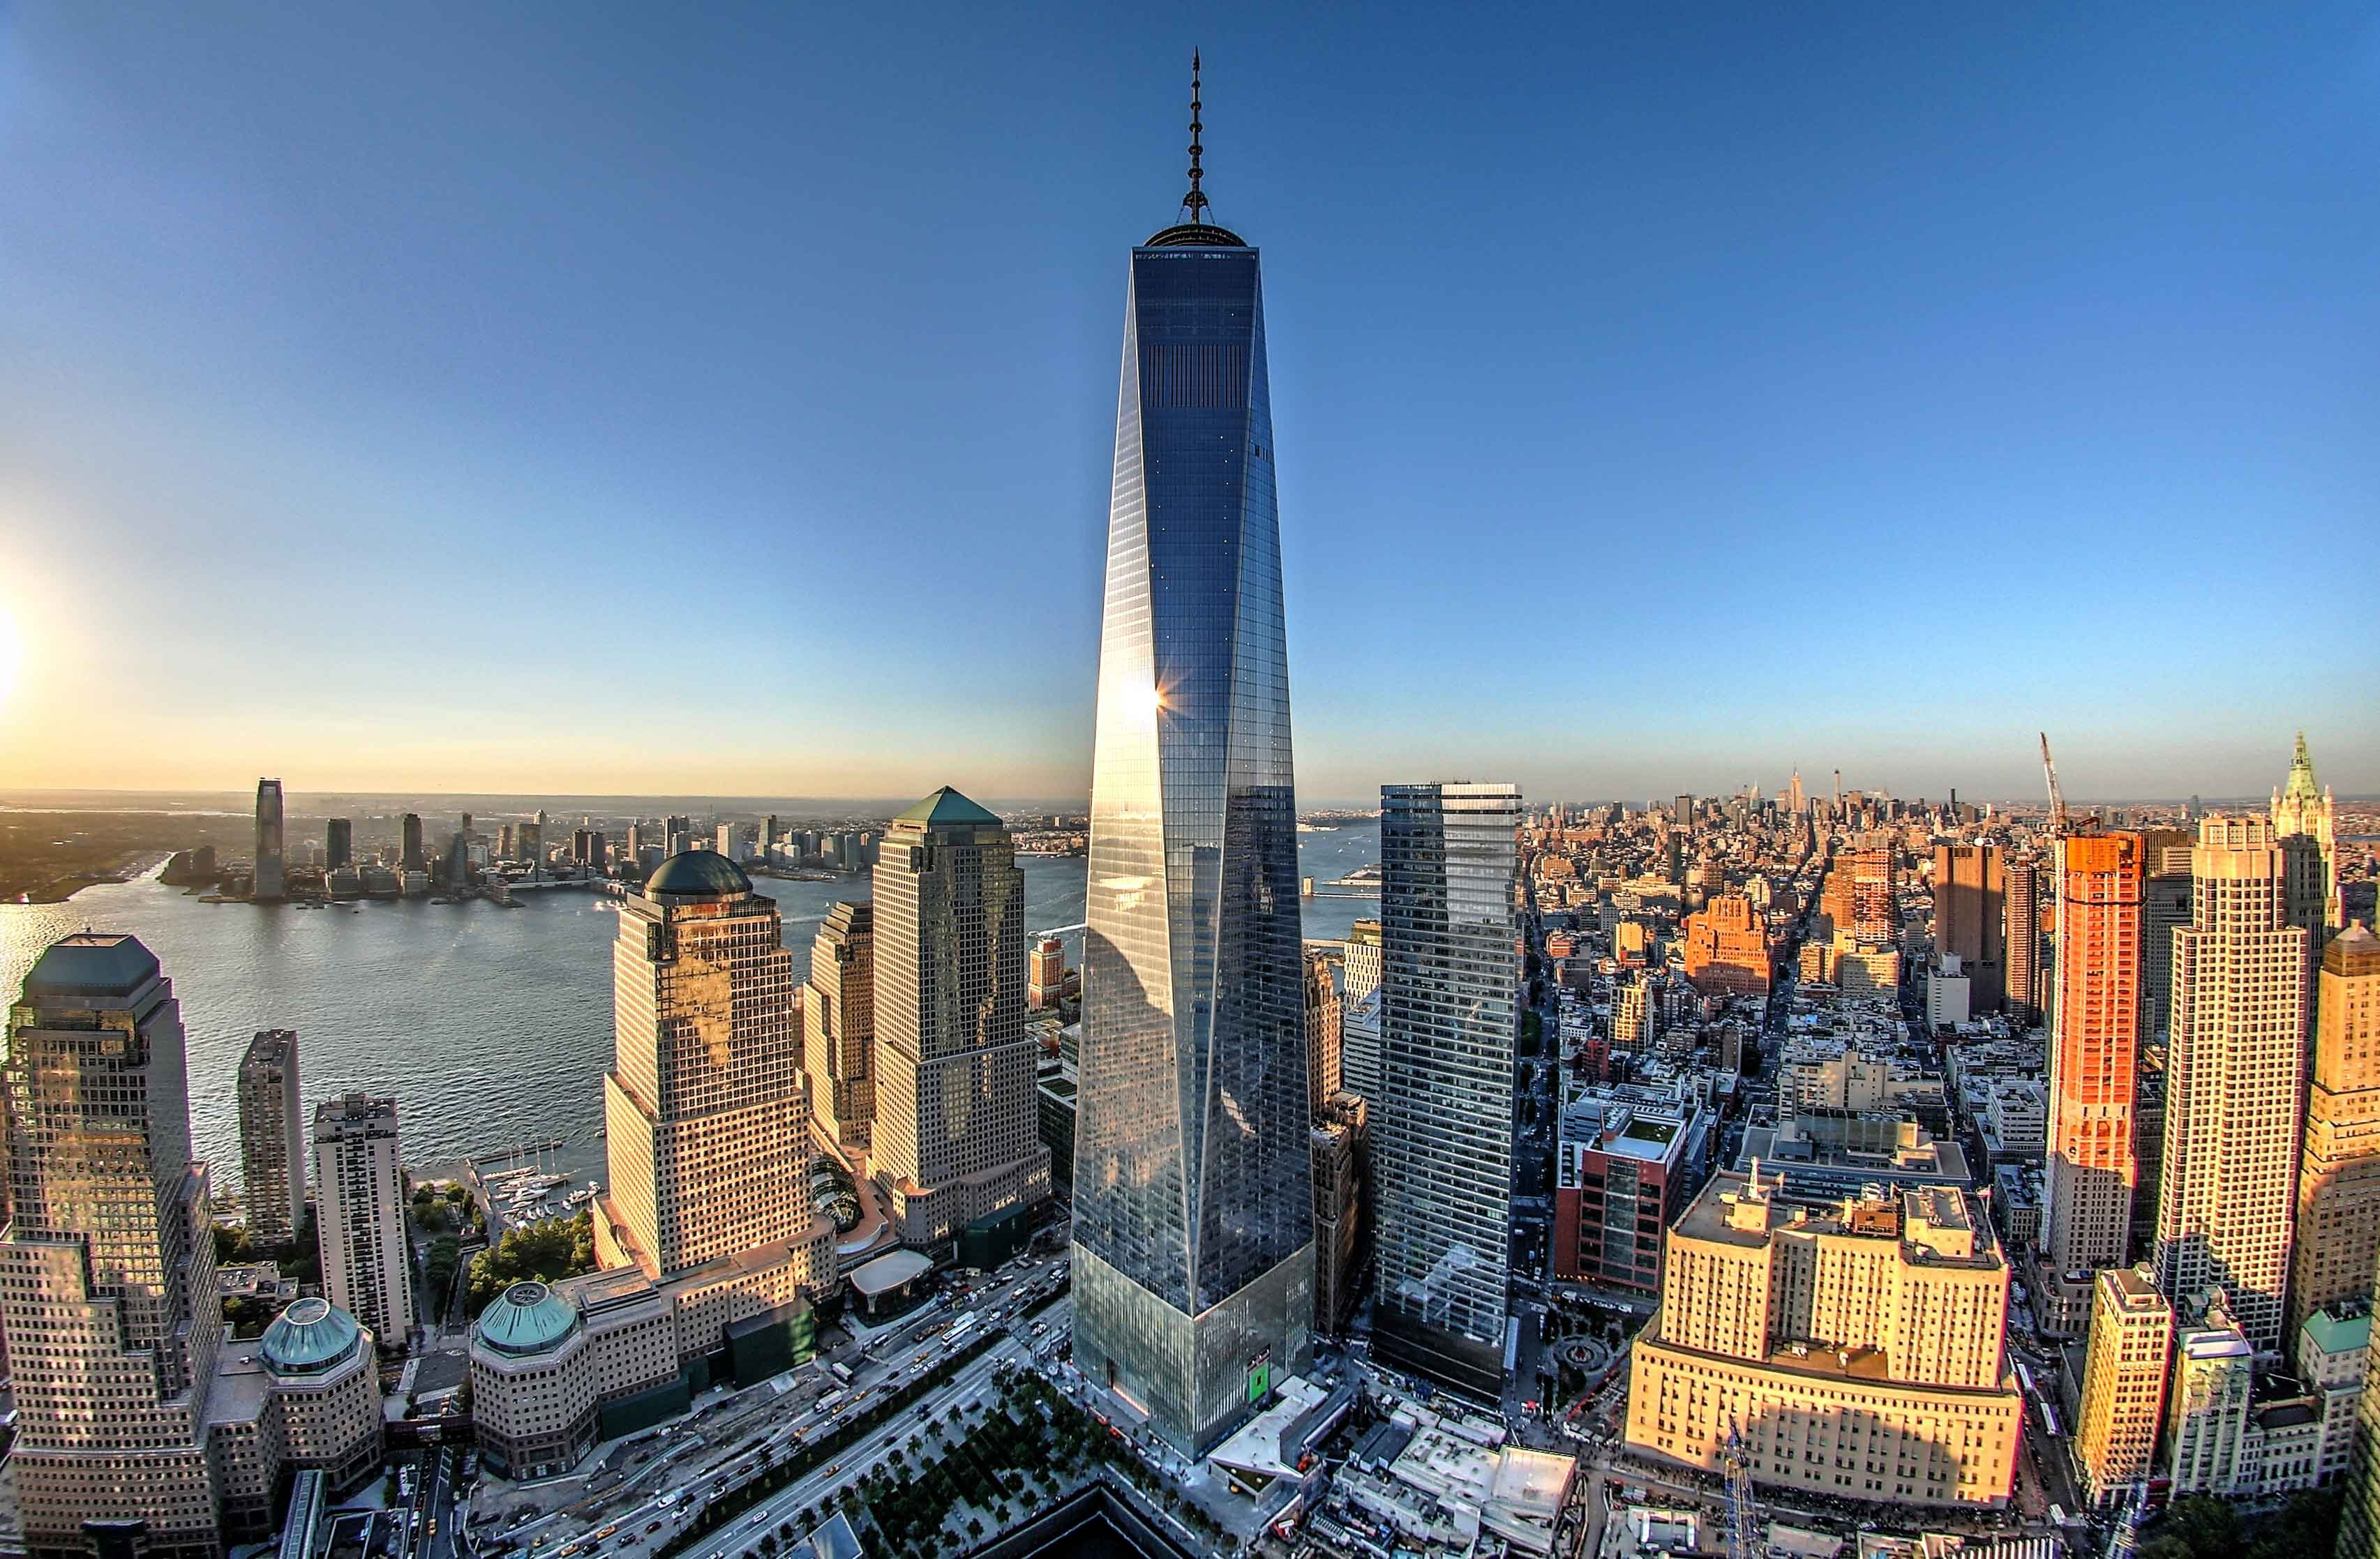 Высокое здание на английском языке. Башни ВТЦ В Нью-Йорке. ВТЦ 1 башня свободы. One World trade Center, Нью-Йорк. Всемирный торговый центр 1 (541 м). Нью-Йорк, США.